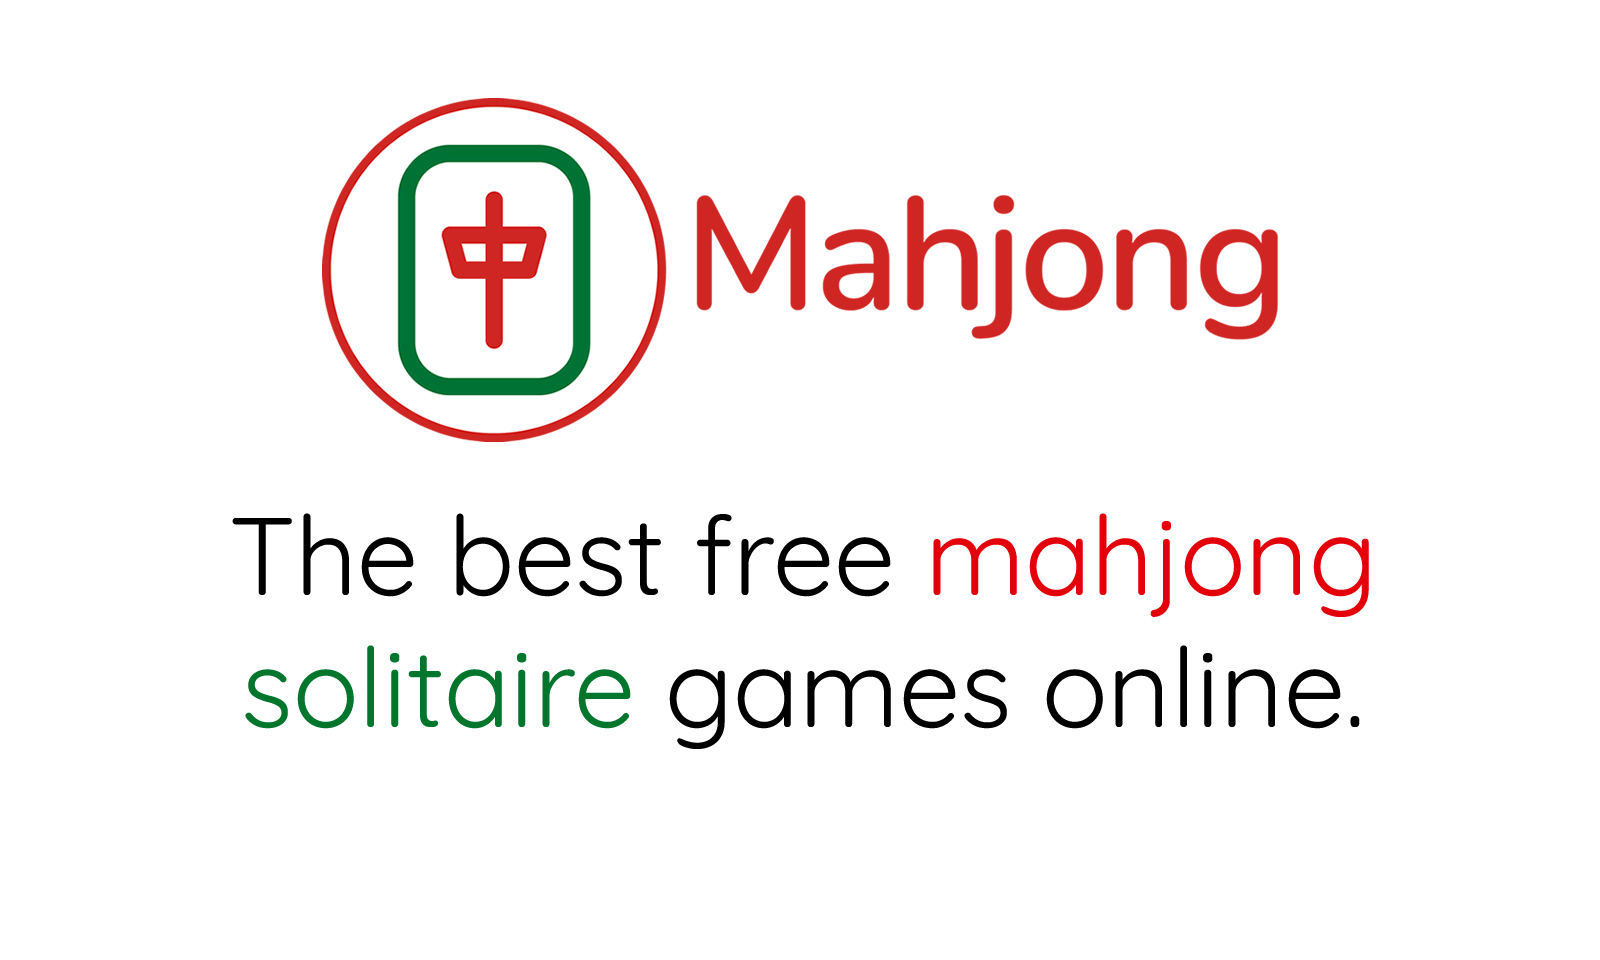 🀄 Mahjong Dragon Connect ➜ play free Mahjong game! 🥇